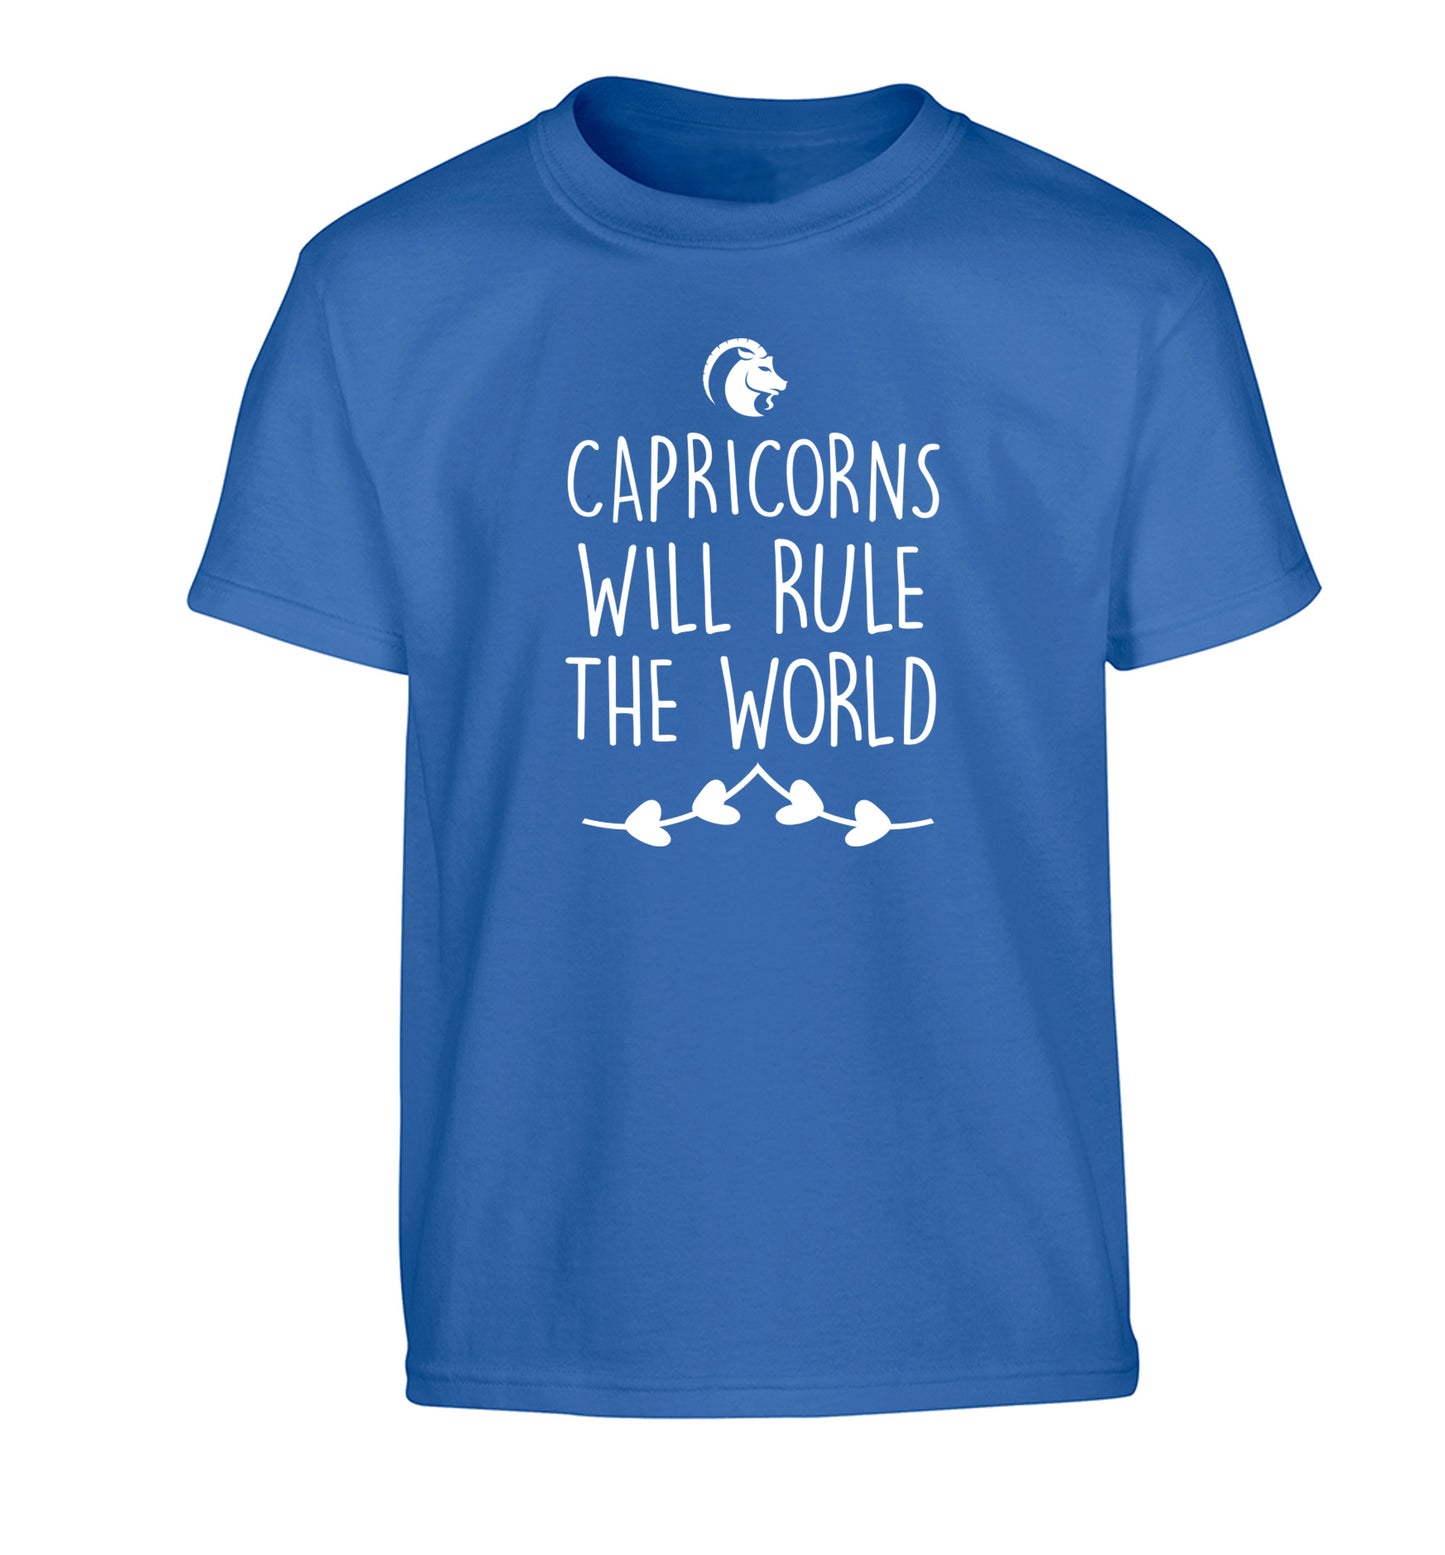 Capricorns will rule the world Children's blue Tshirt 12-13 Years